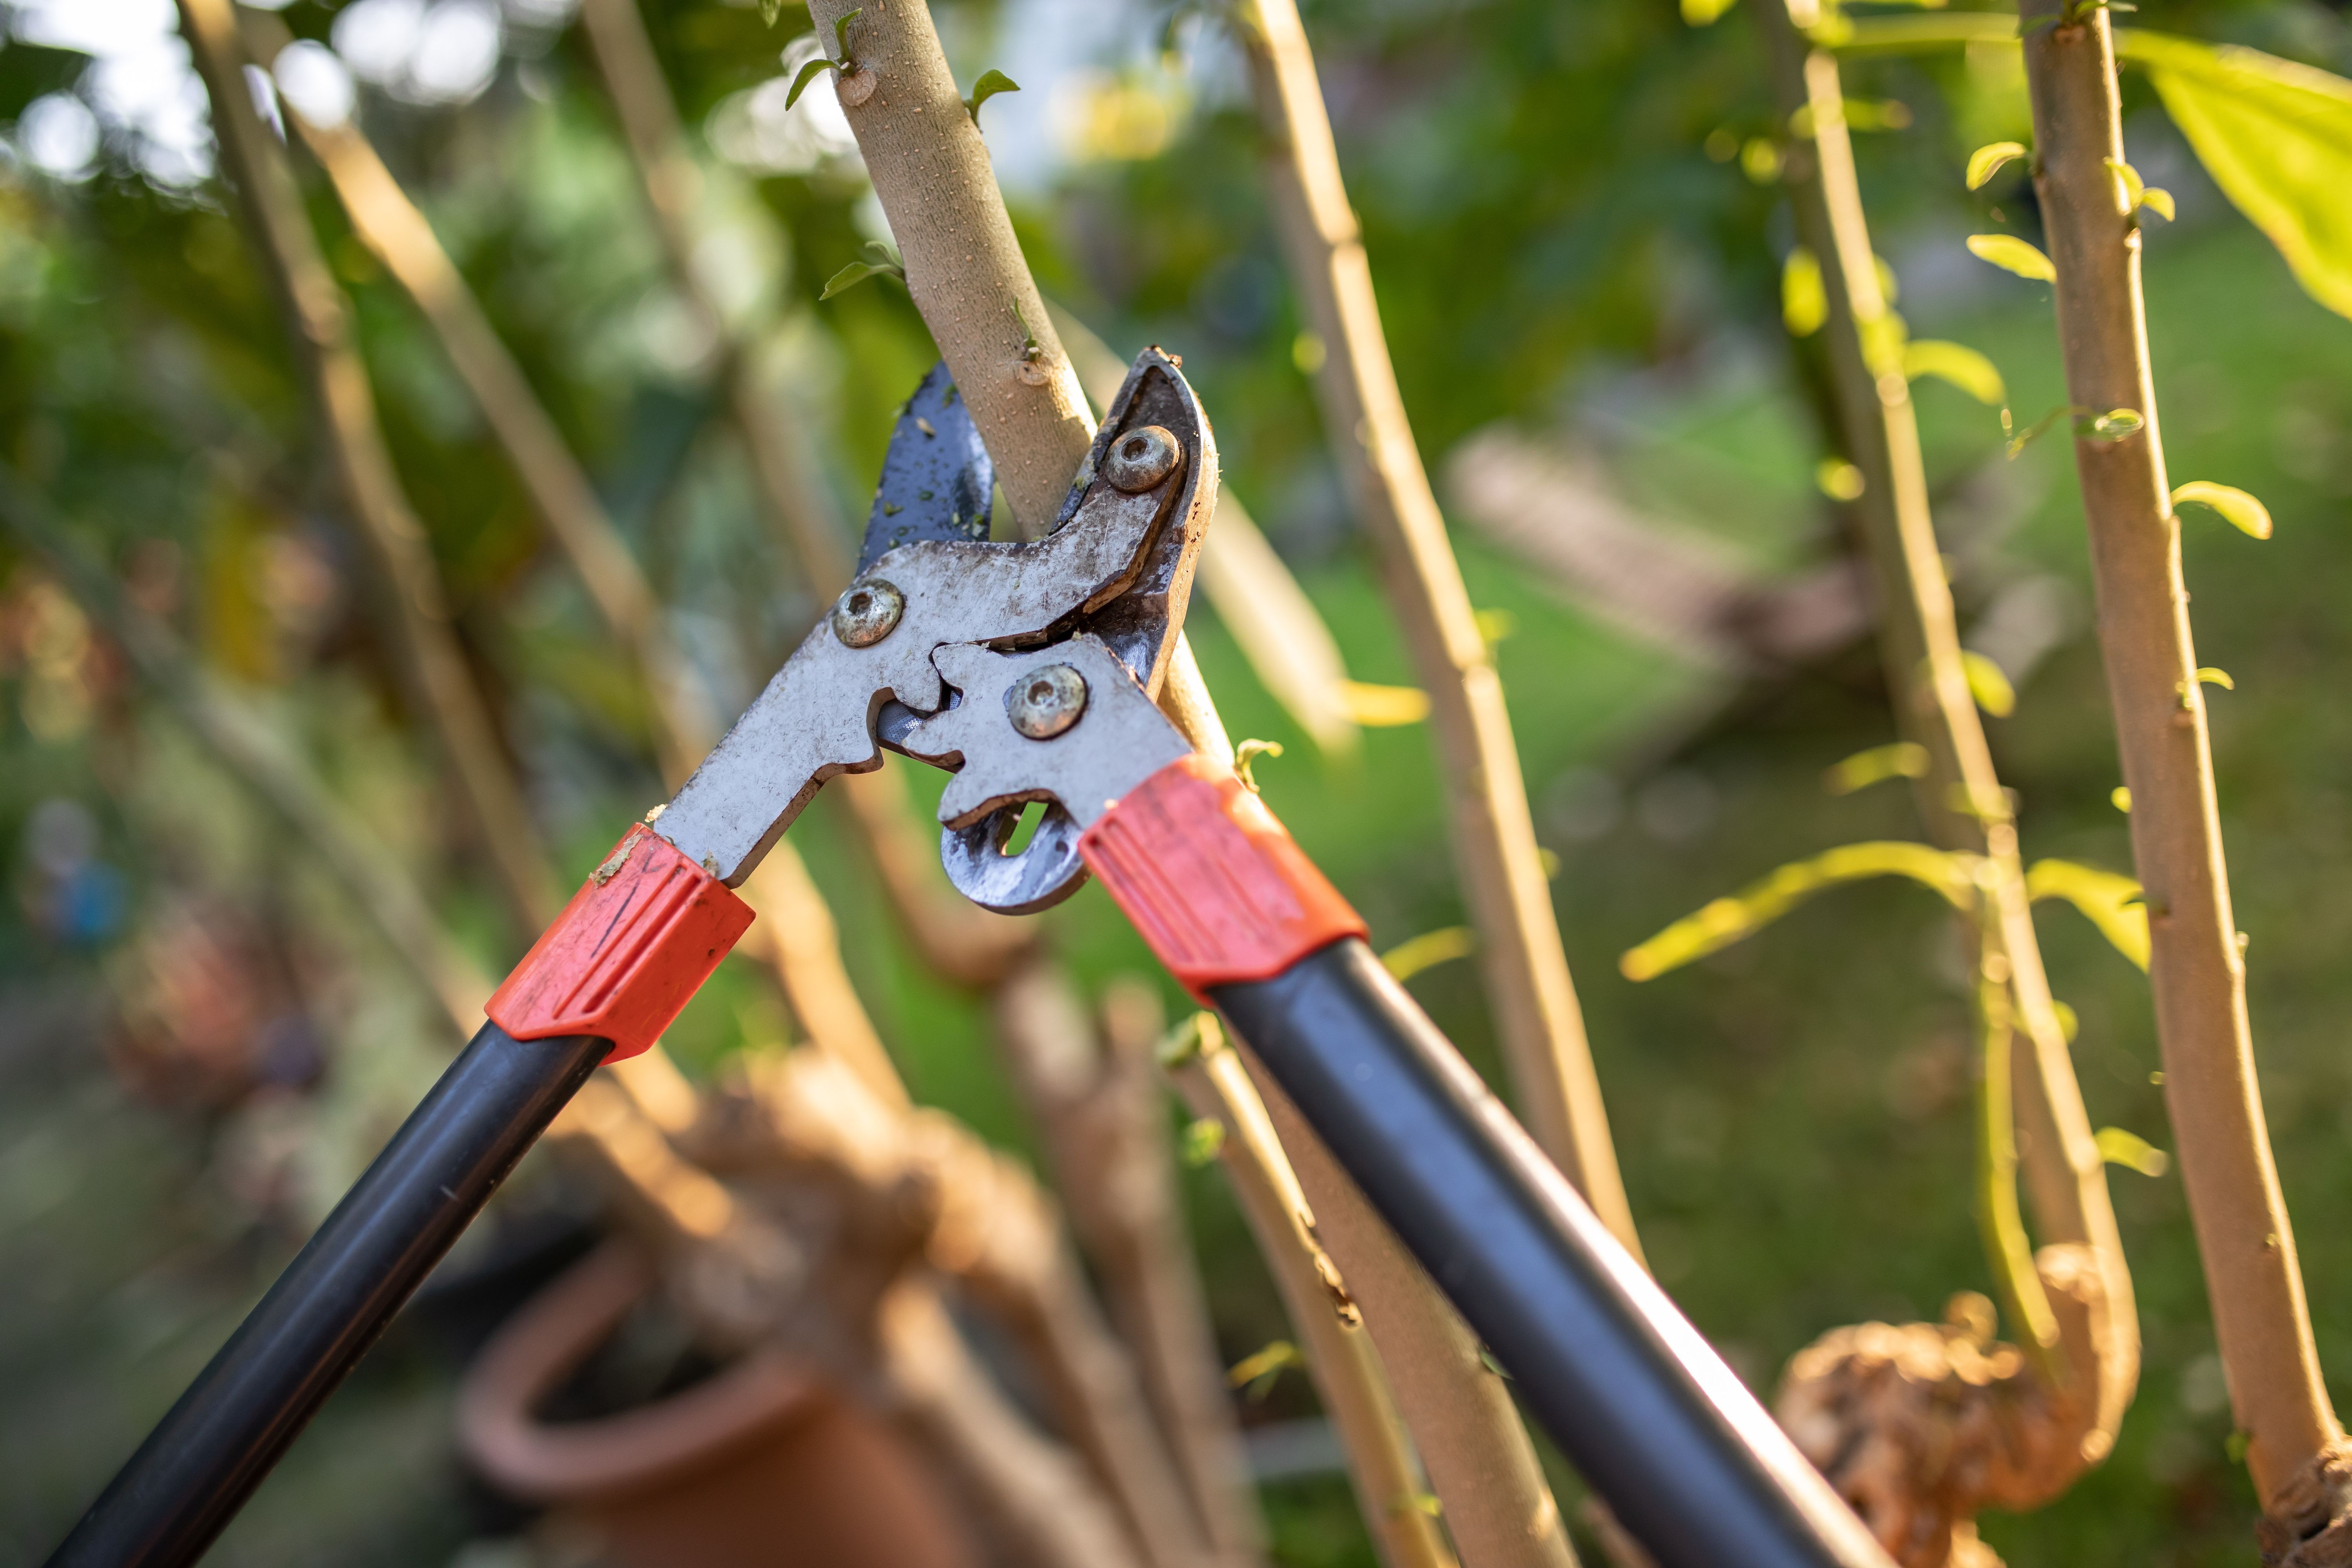 Bei dickeren Ästen reicht die Gartenschere nicht mehr aus und die Astschere kommt zum Einsatz. Durch die langen Scherenarme können Sie mit der Hebelwirkung große Kraft auf das Holz ausüben.